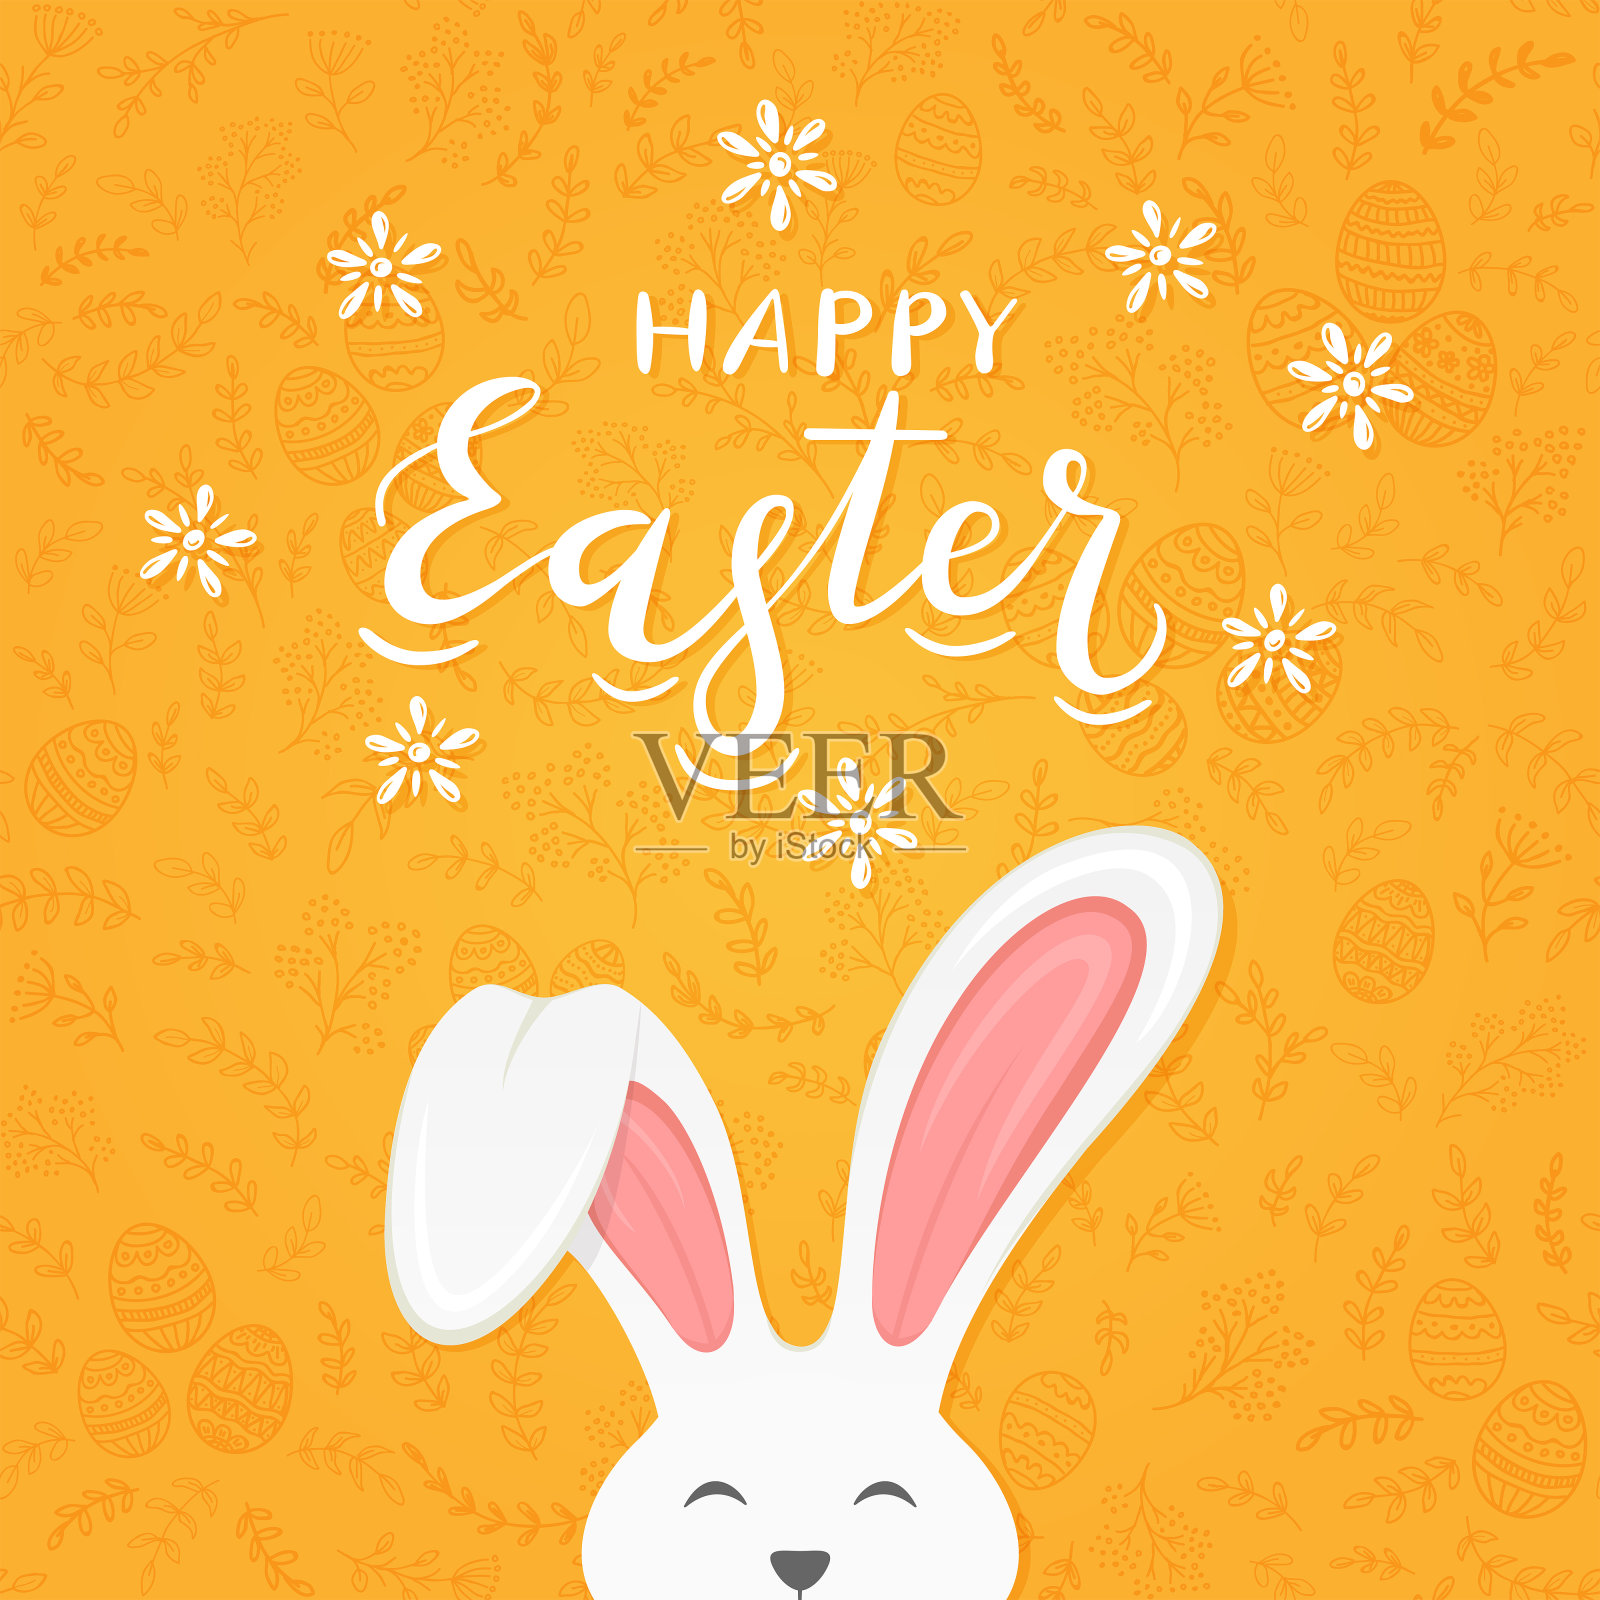 橙色背景与图案和文字复活节快乐兔耳朵插画图片素材